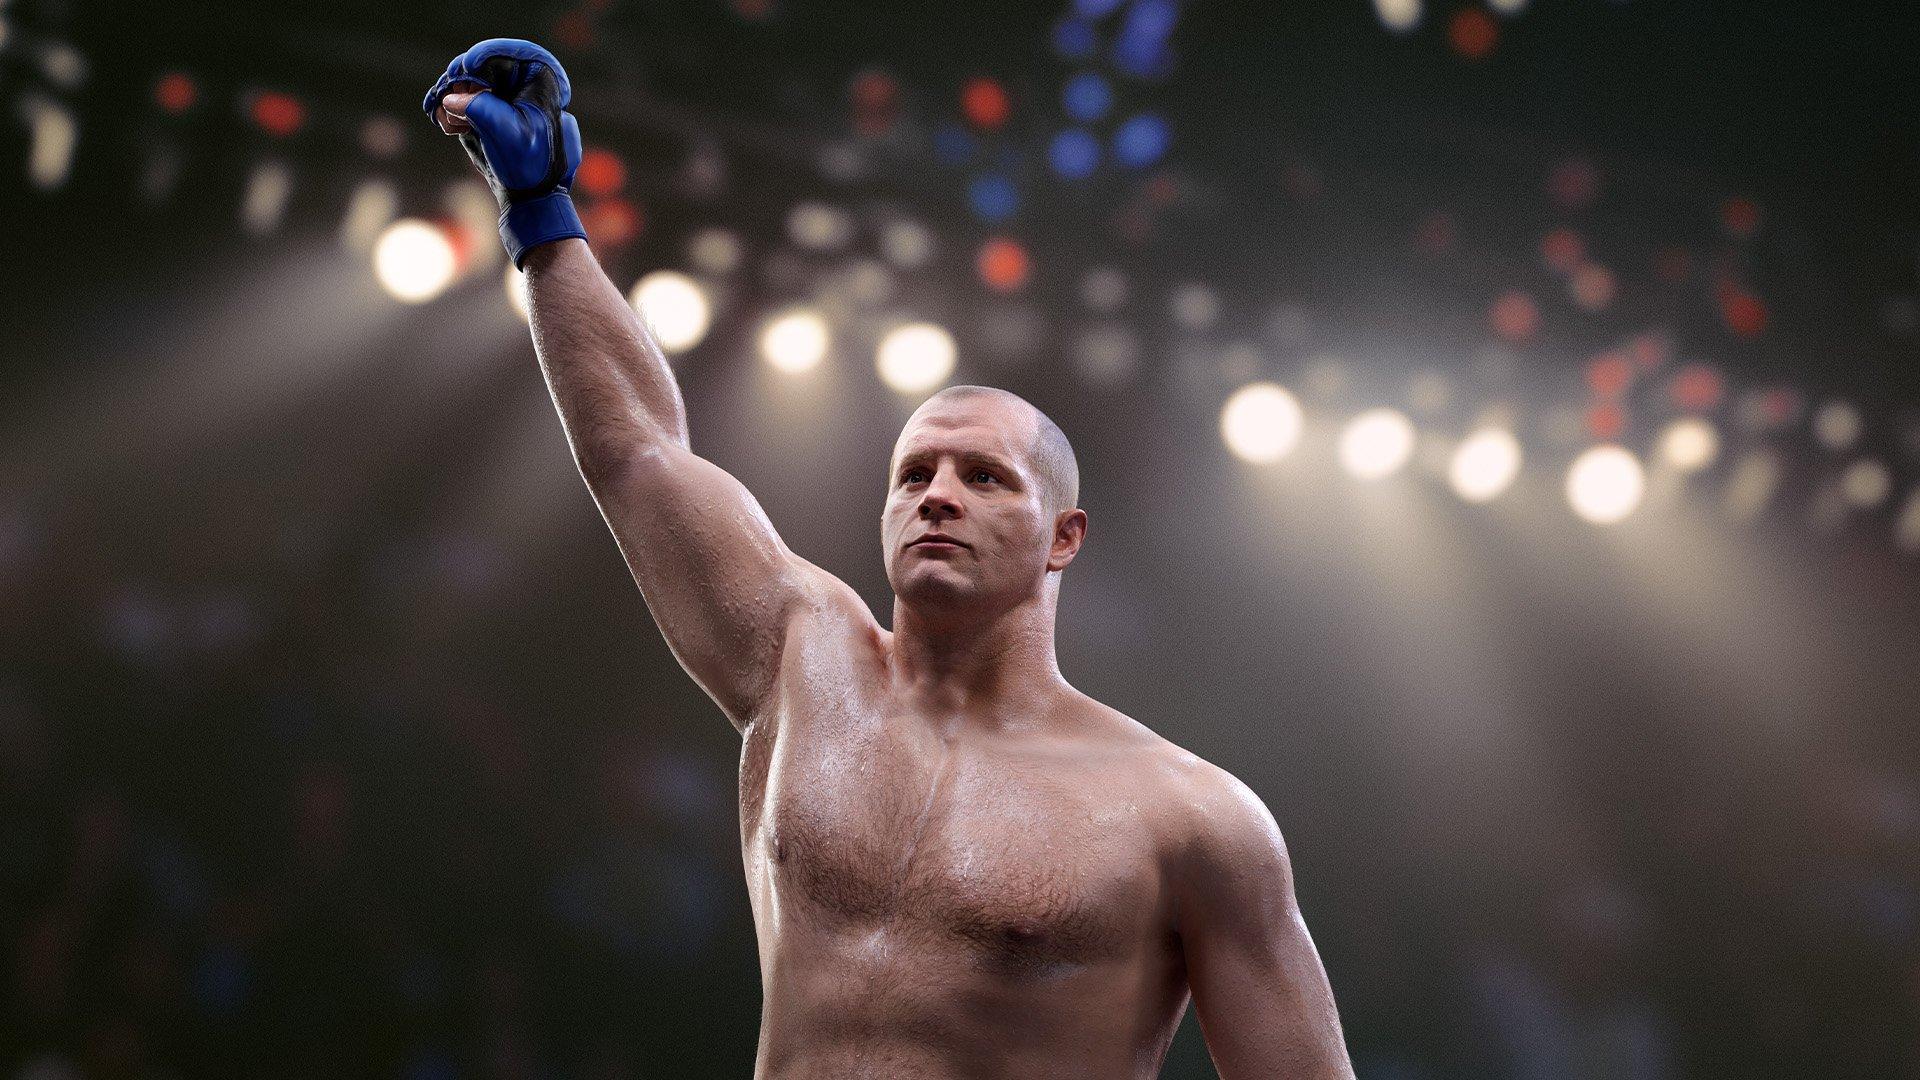 UFC 5 PS5 DIGITAL - Comprar en MegaplayDigital